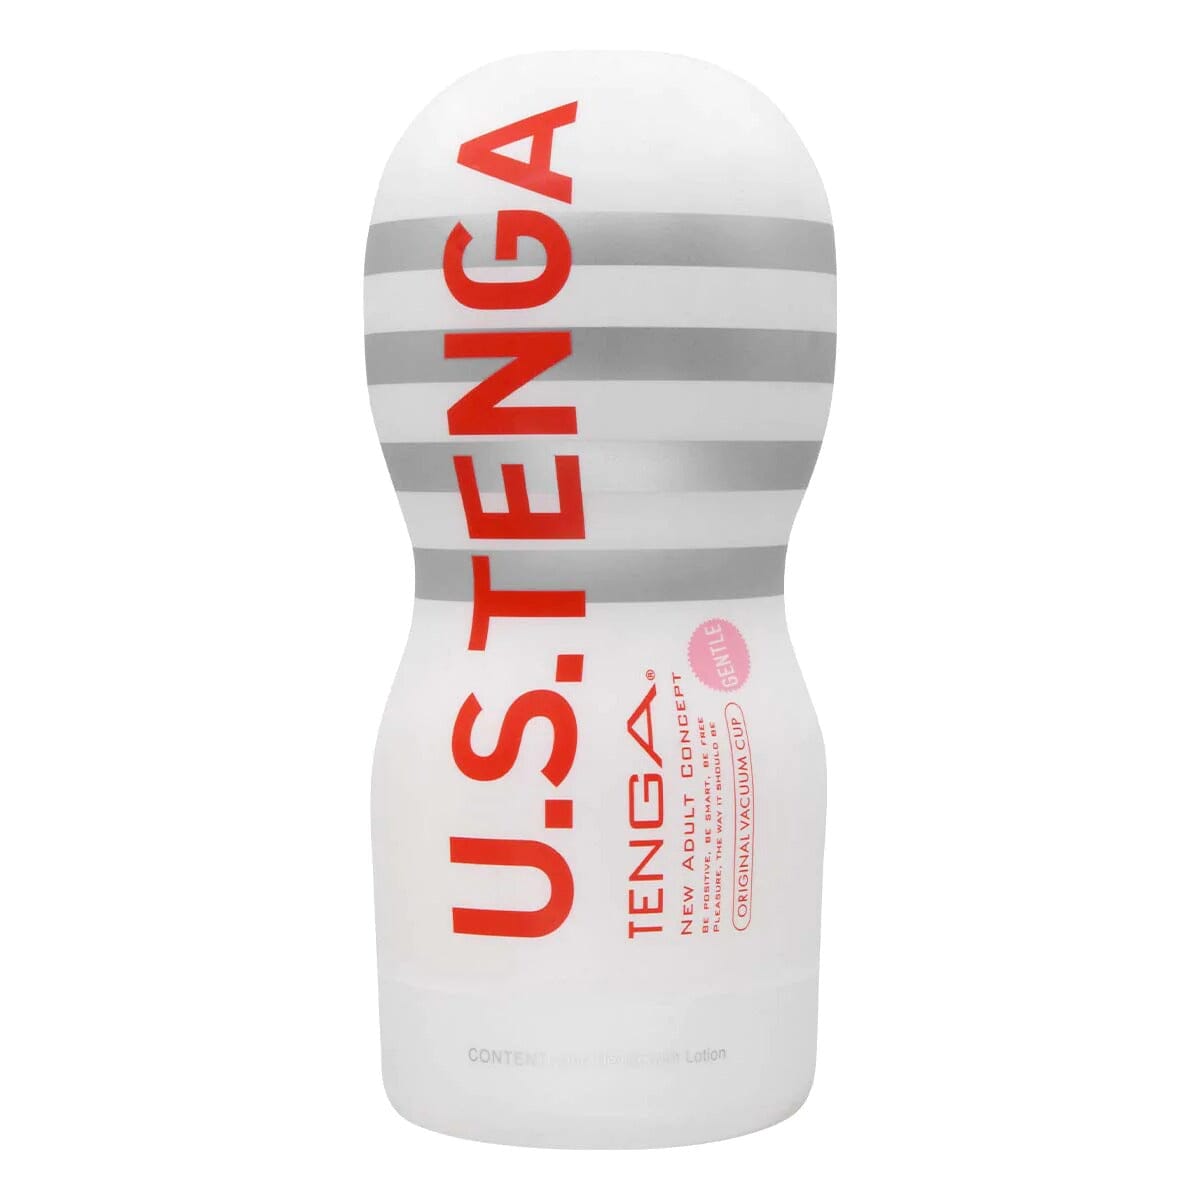 TENGA U.S. ORIGINAL VACUUM CUP 第二代 經典真空杯 柔軟型 購買